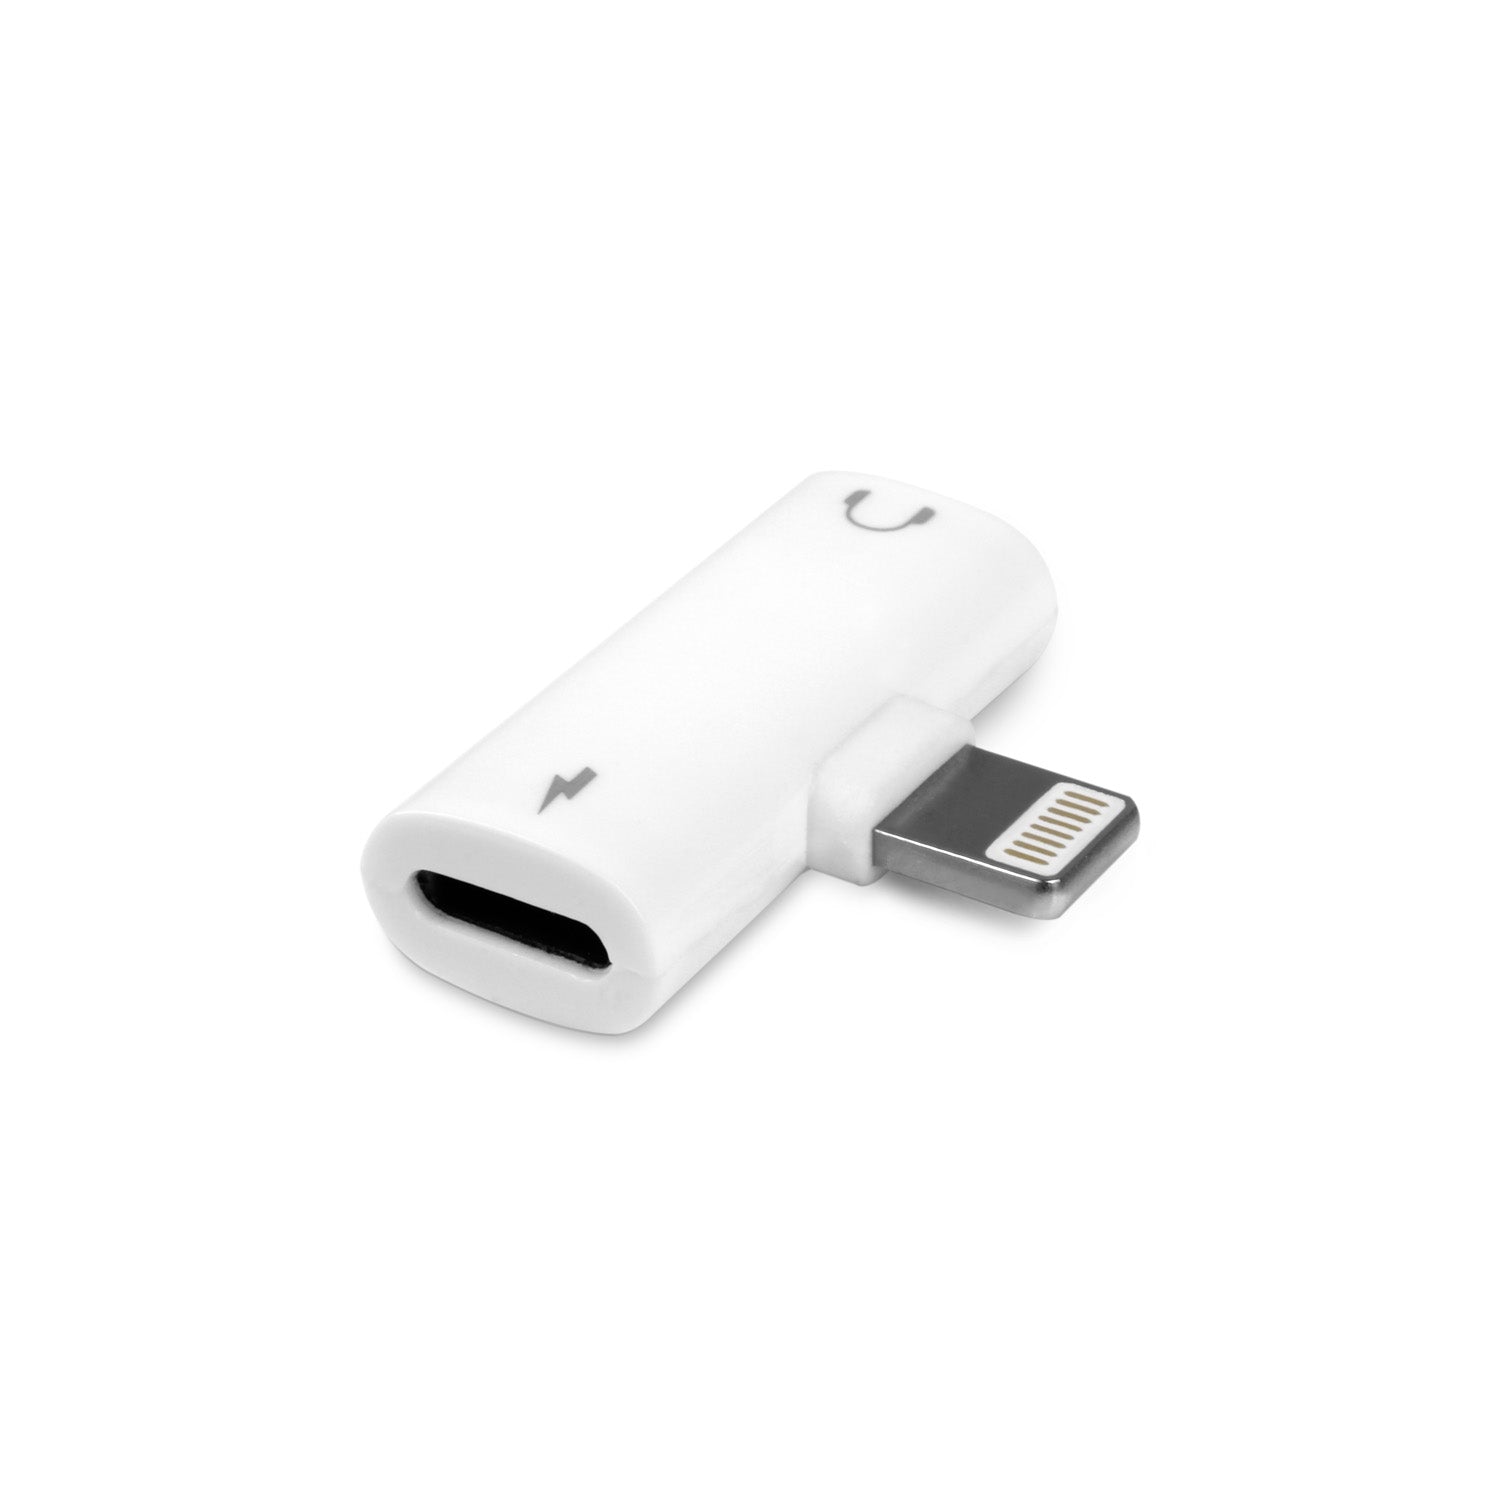 Adaptateur Apple, connectez vos écouteurs 3,5 mm aux nouveaux modèles Mac,  iPad et iPhone